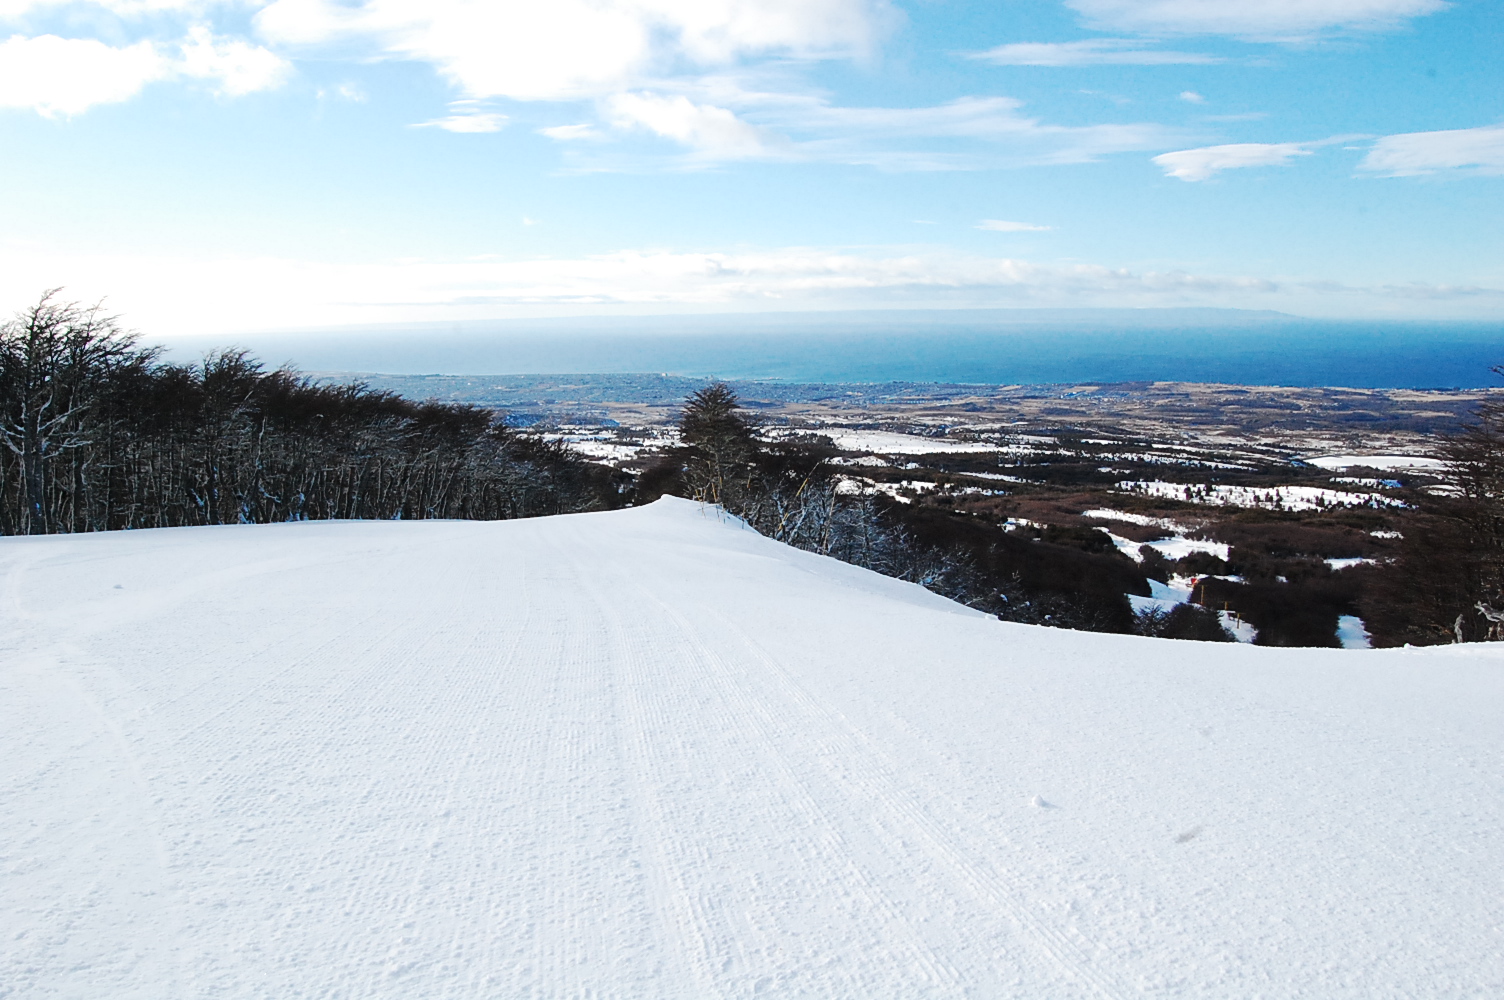 Esquiando con vista a la ciudad, Cerro Mirador